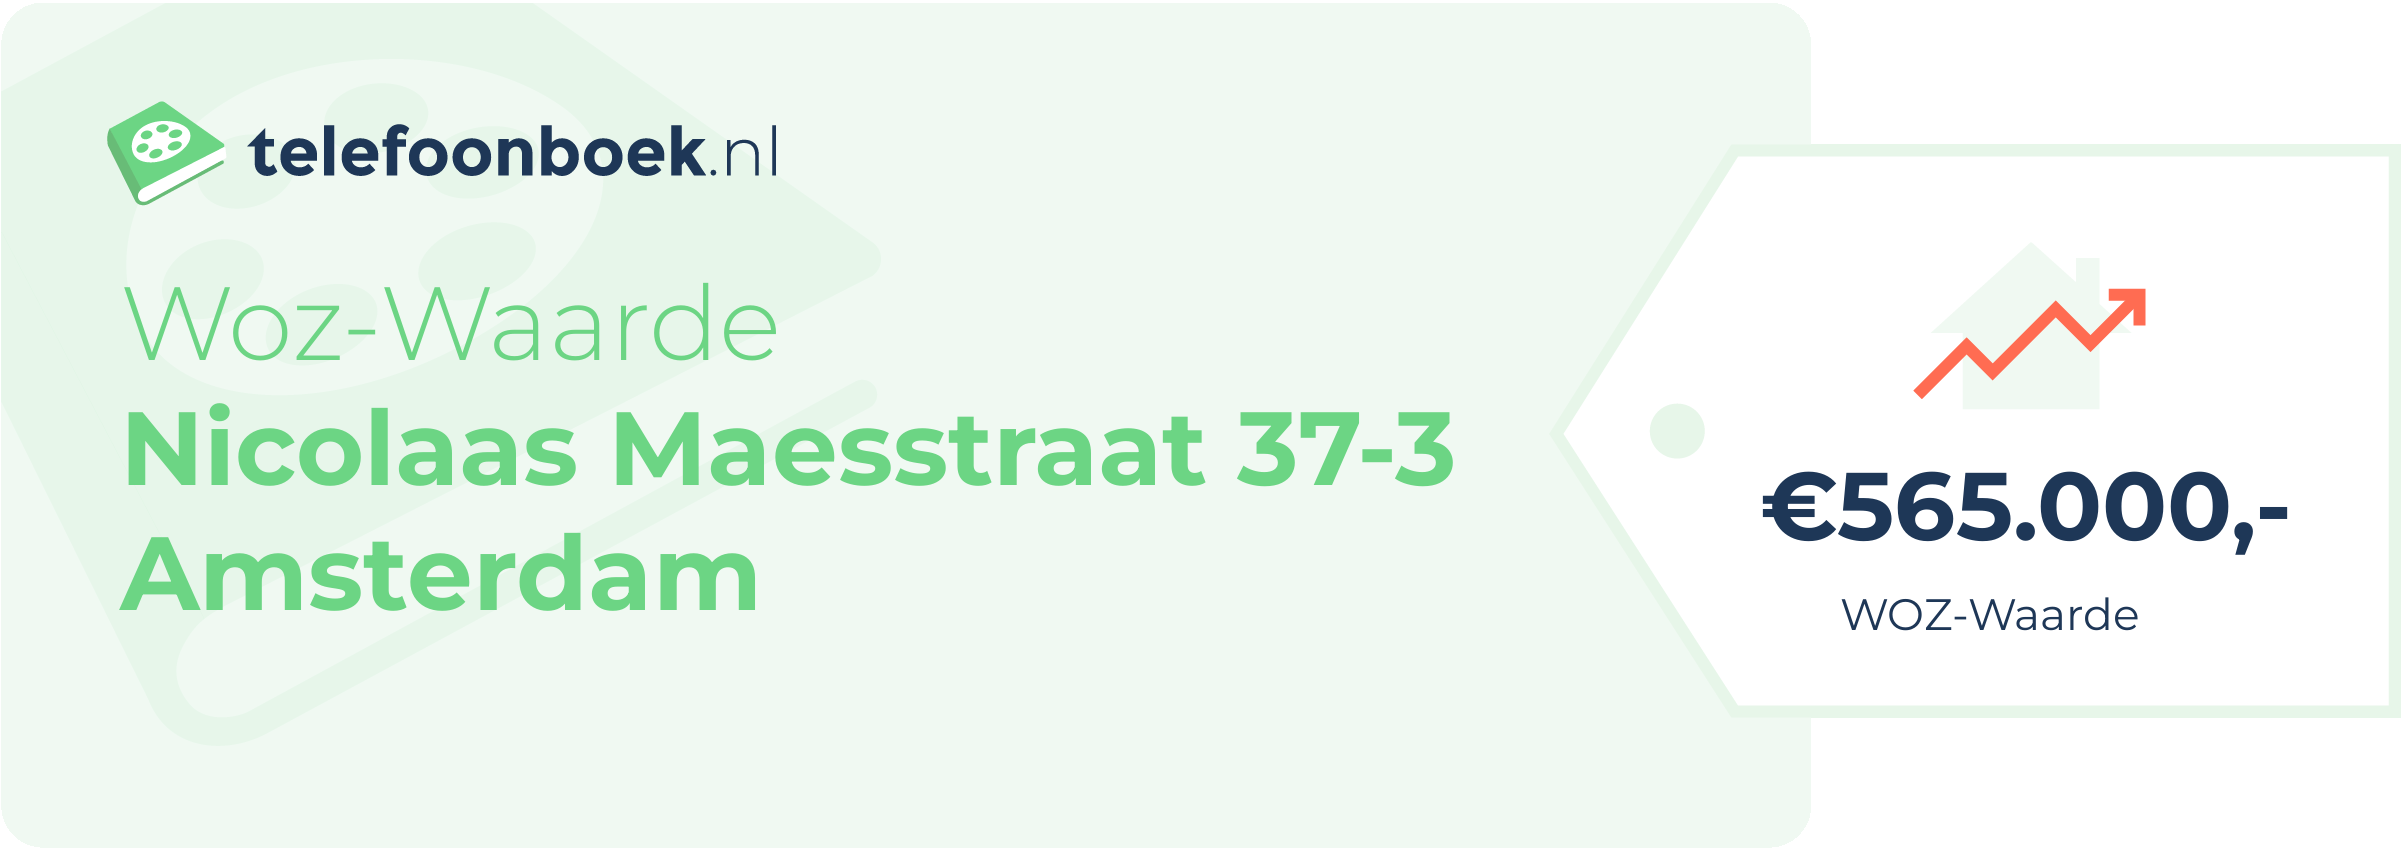 WOZ-waarde Nicolaas Maesstraat 37-3 Amsterdam